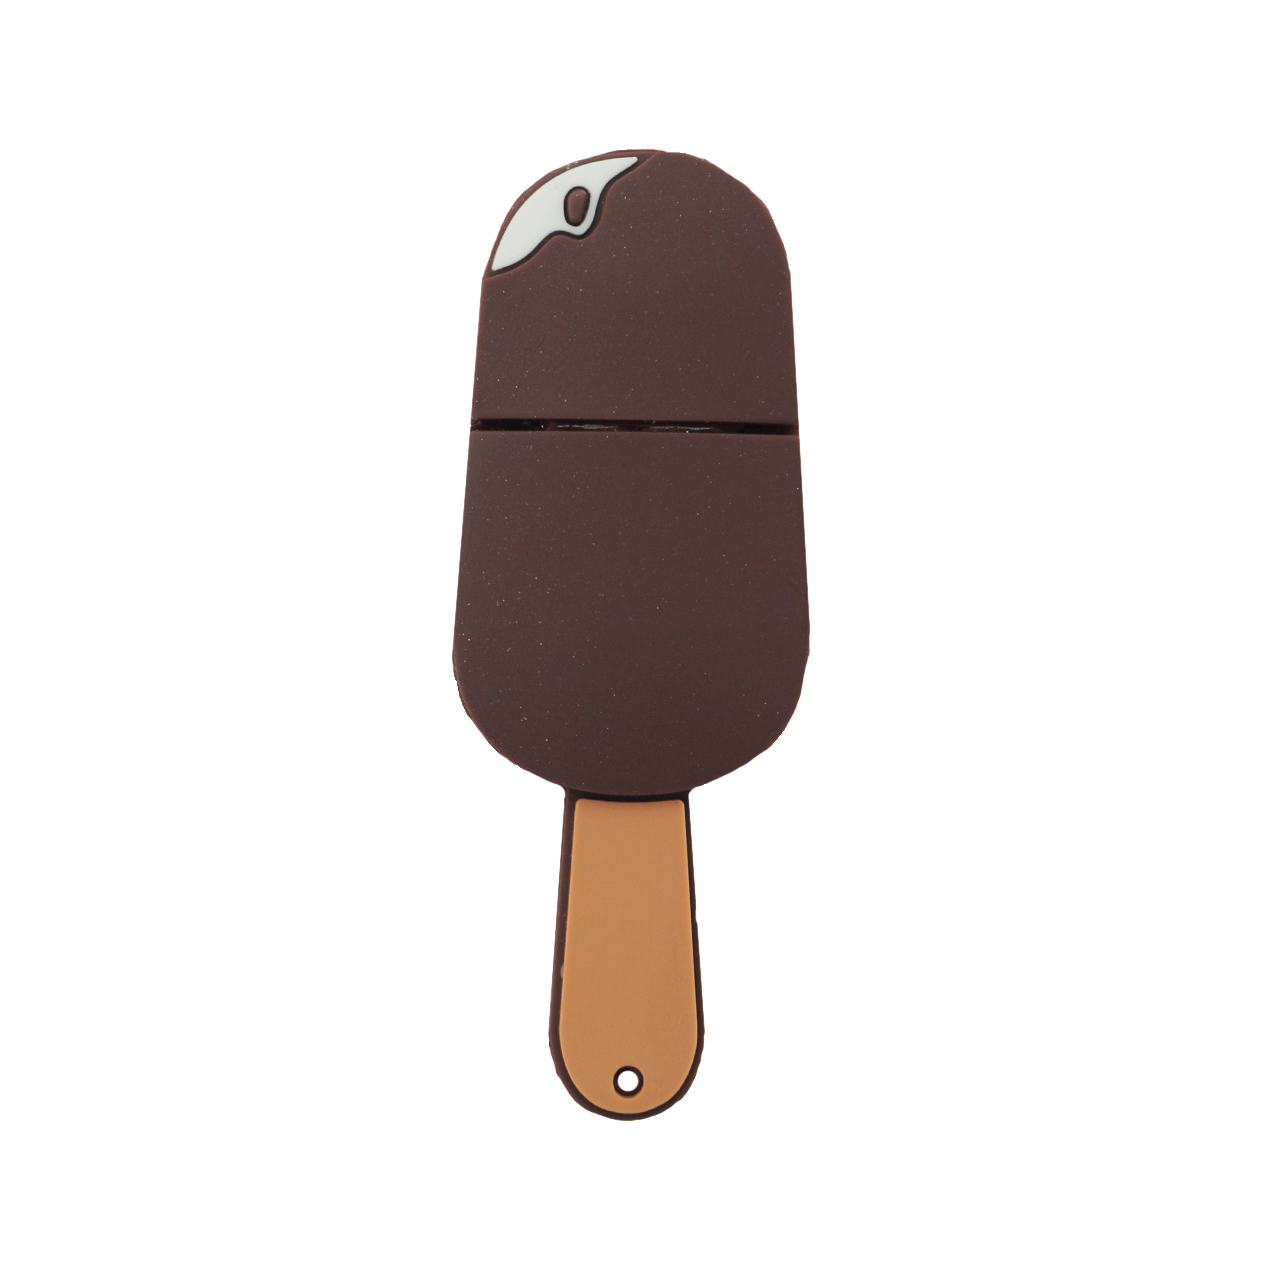 فلش مموری طرح Ice cream stick مدل DPL1020-U3 ظرفیت 128 گیگابایت